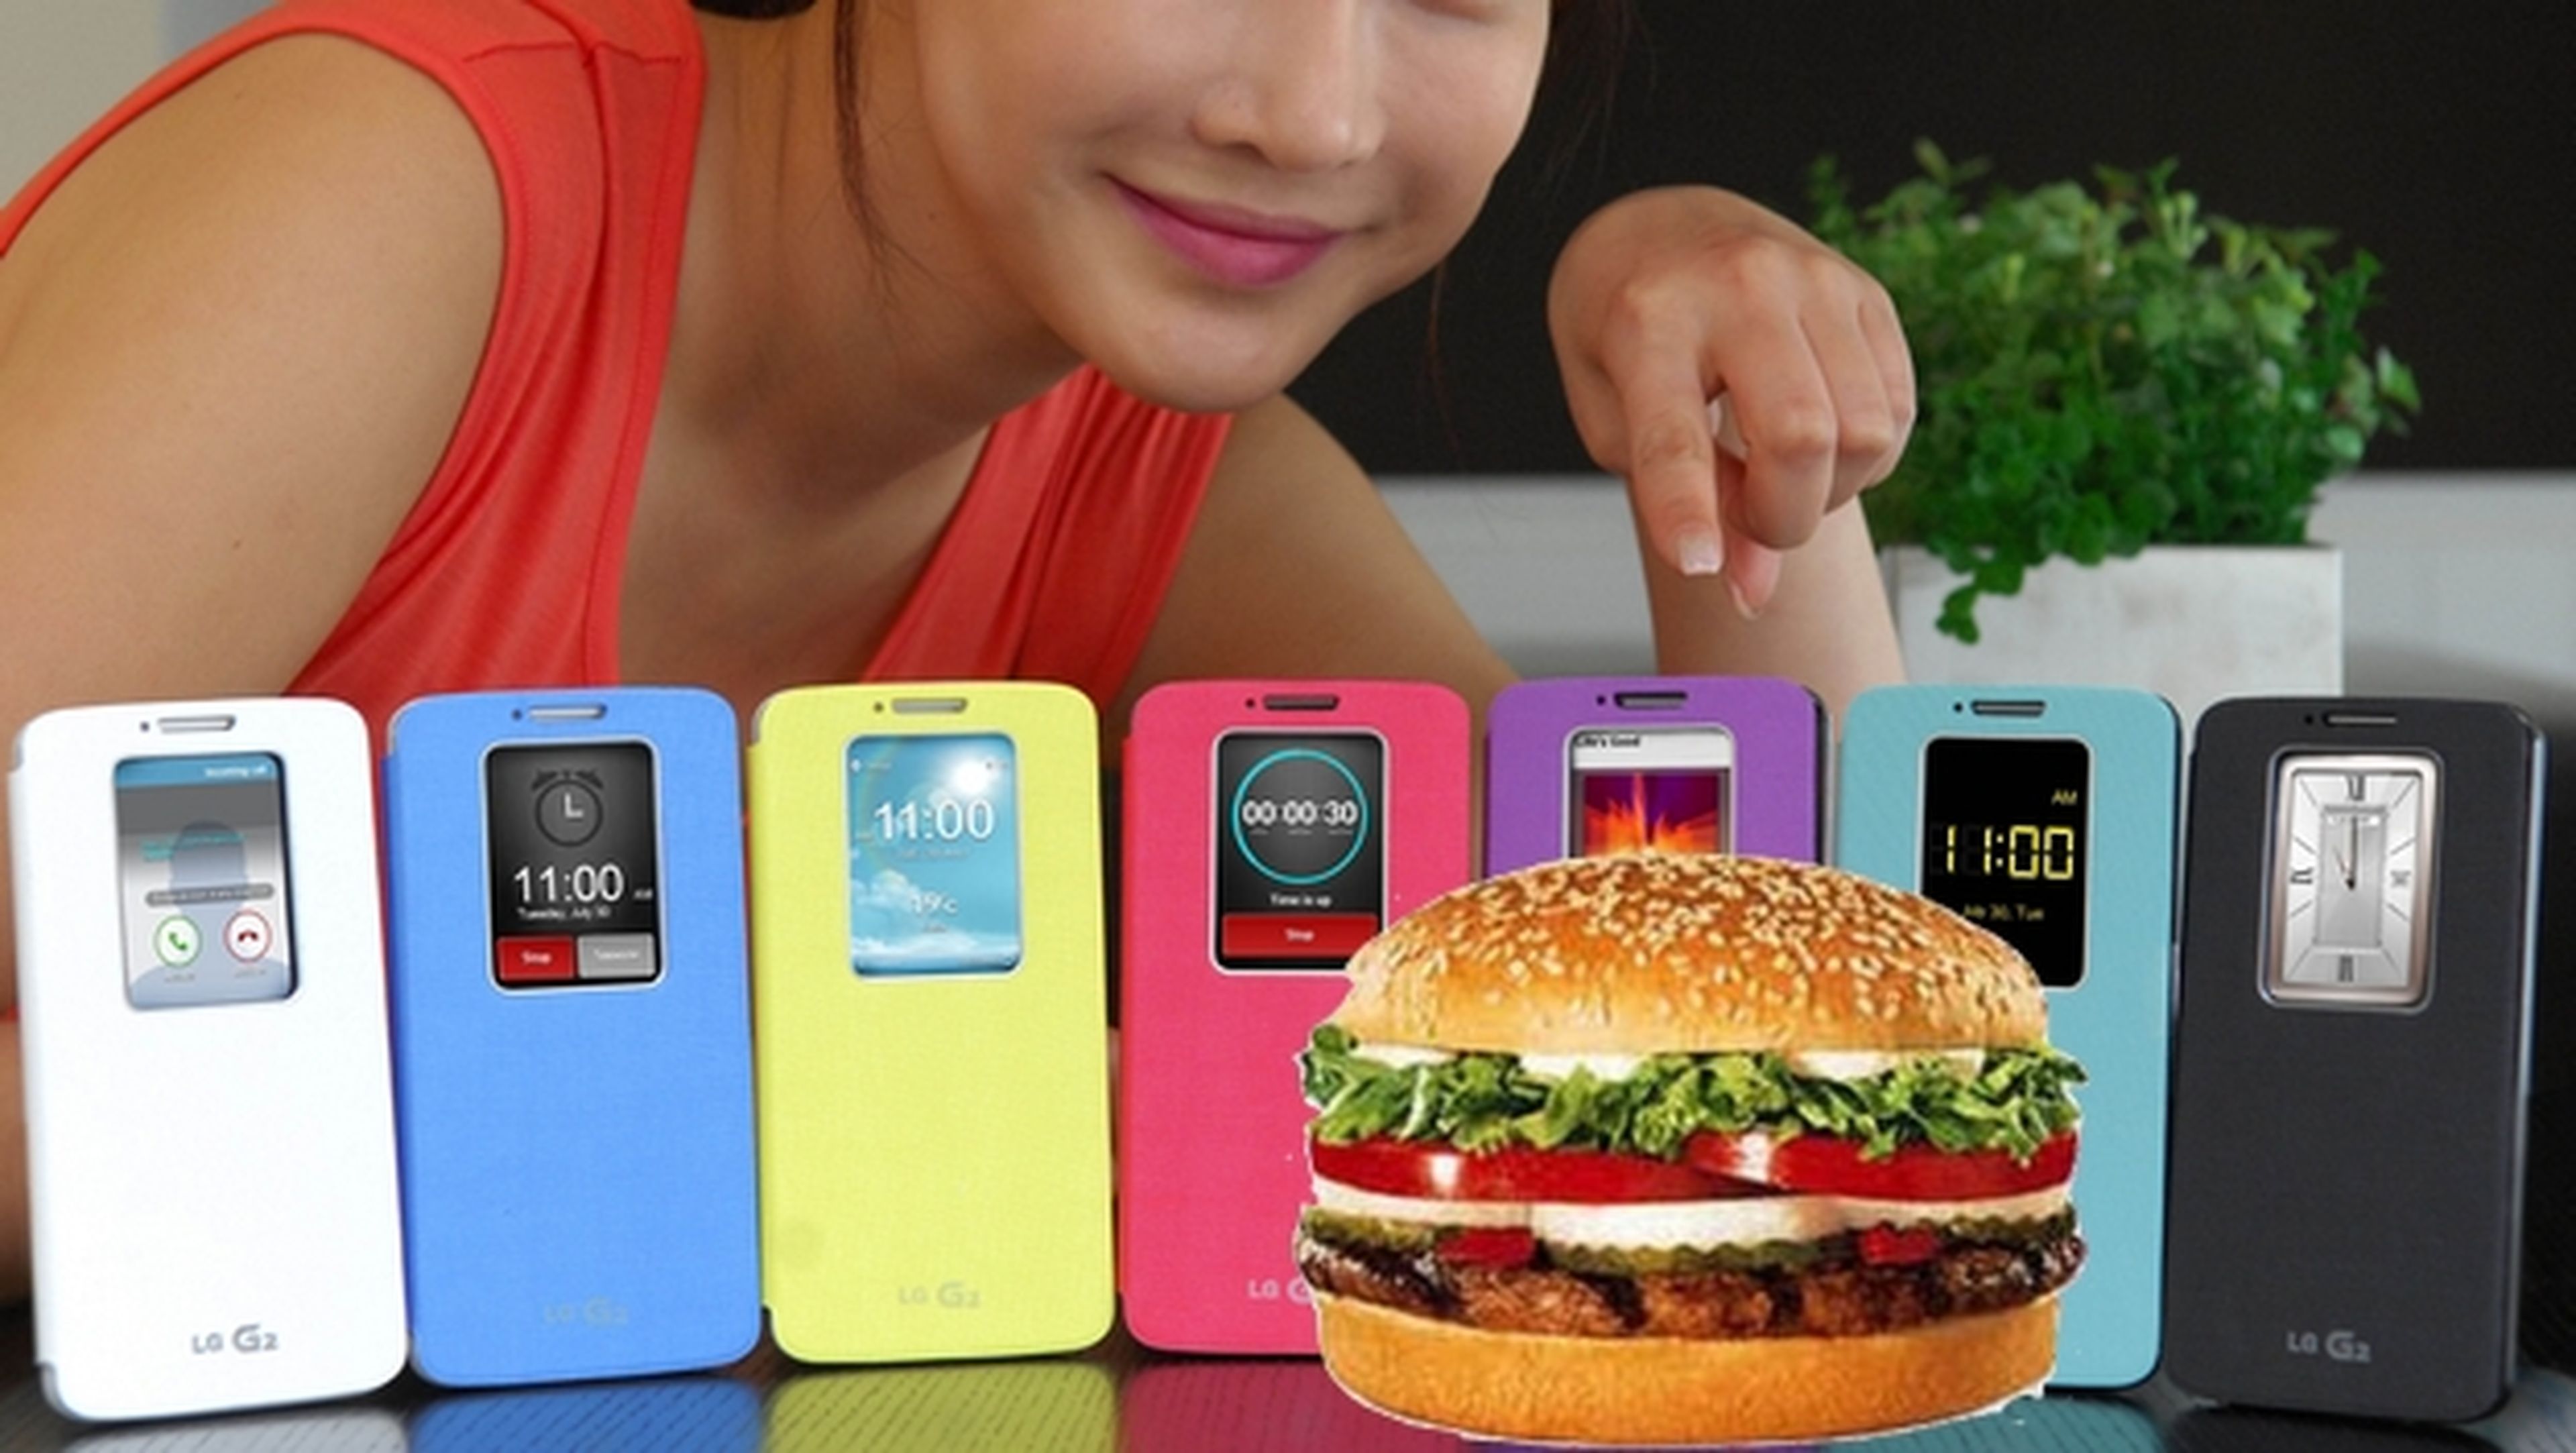 Burger King regala smartphones gratis al descargar su app oficial